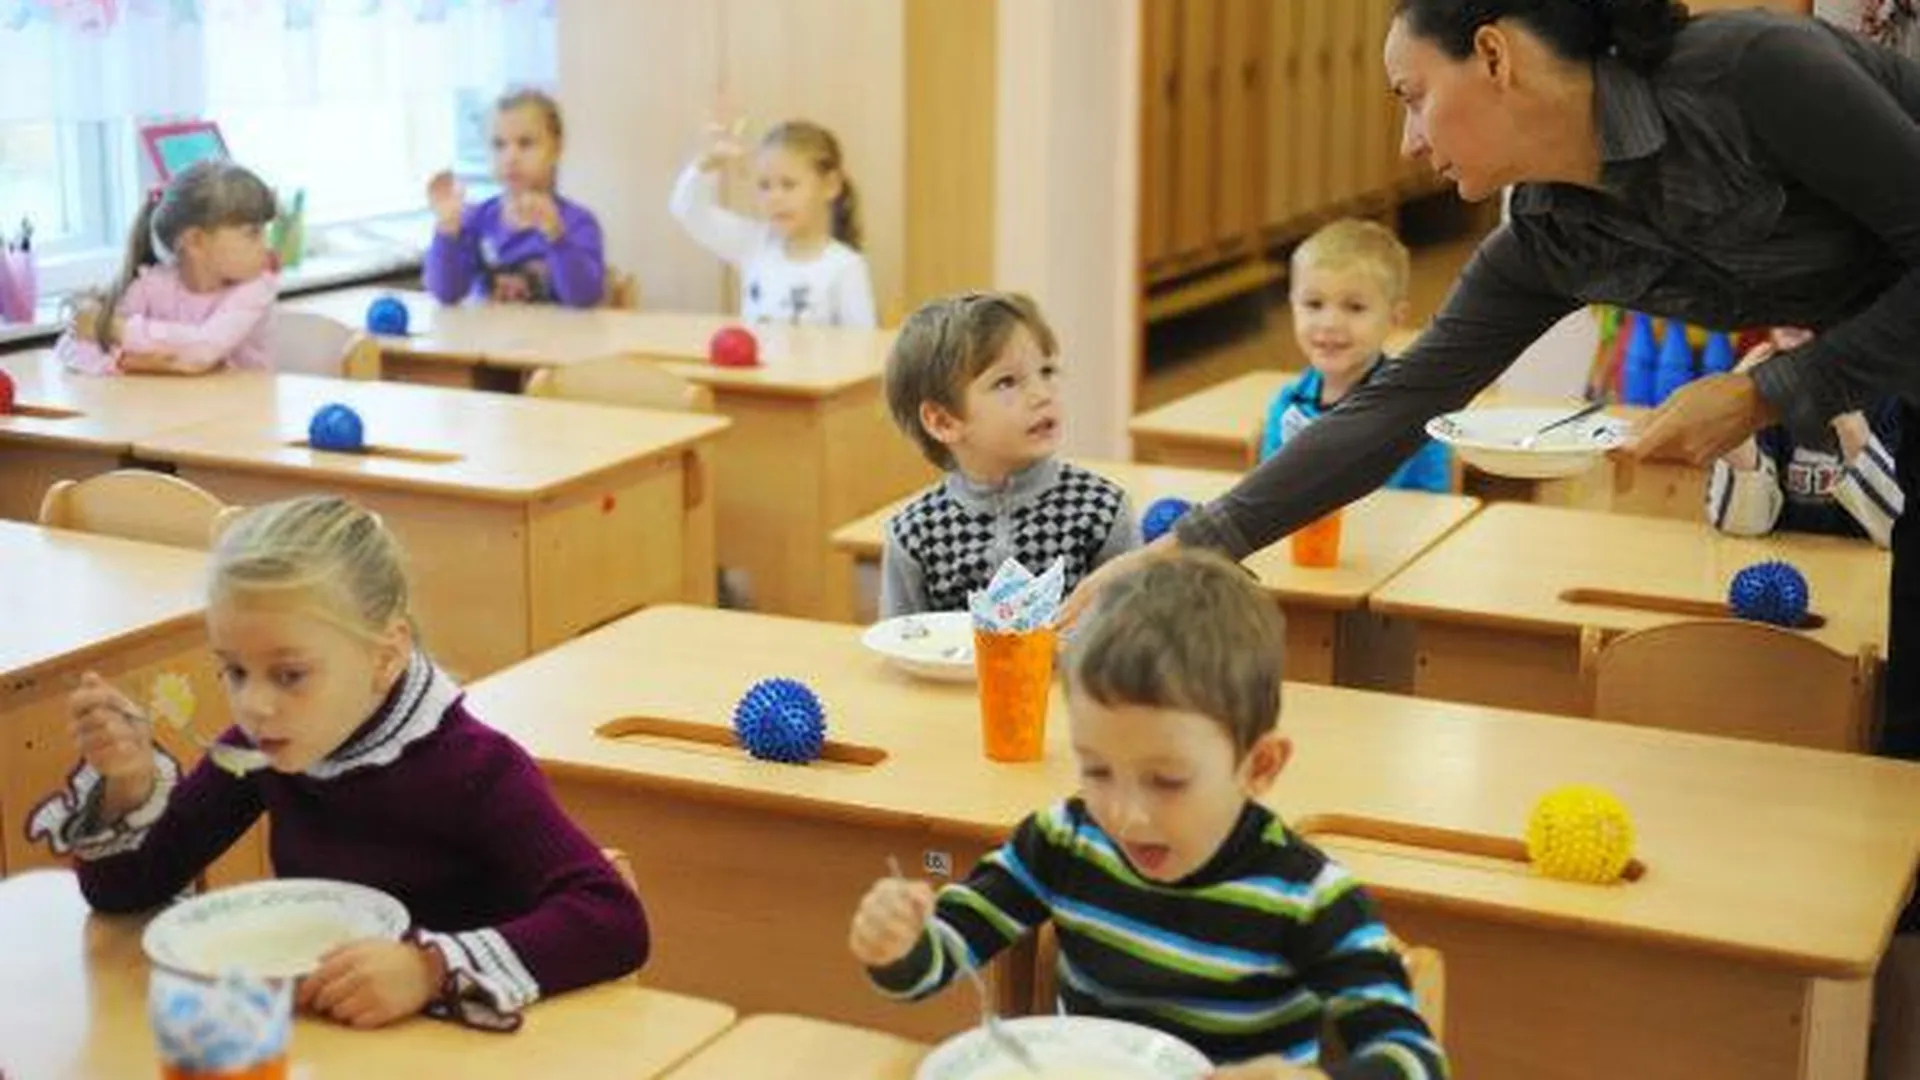 Три новых детских сада откроется в Подольске в 2015 году